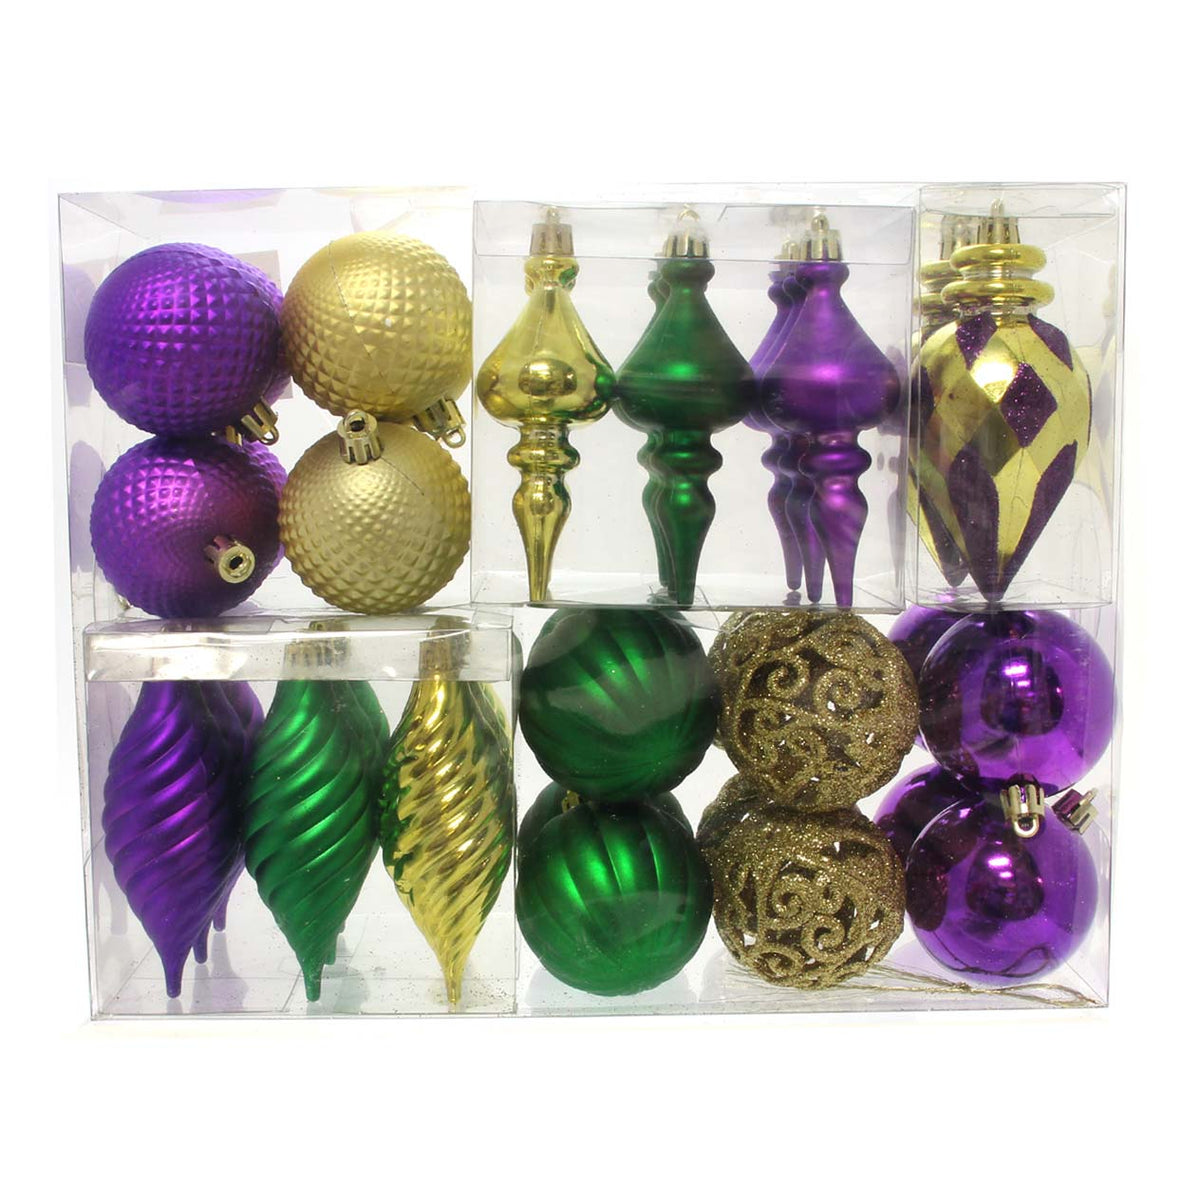 Mardi Gras Ornaments, box of 40